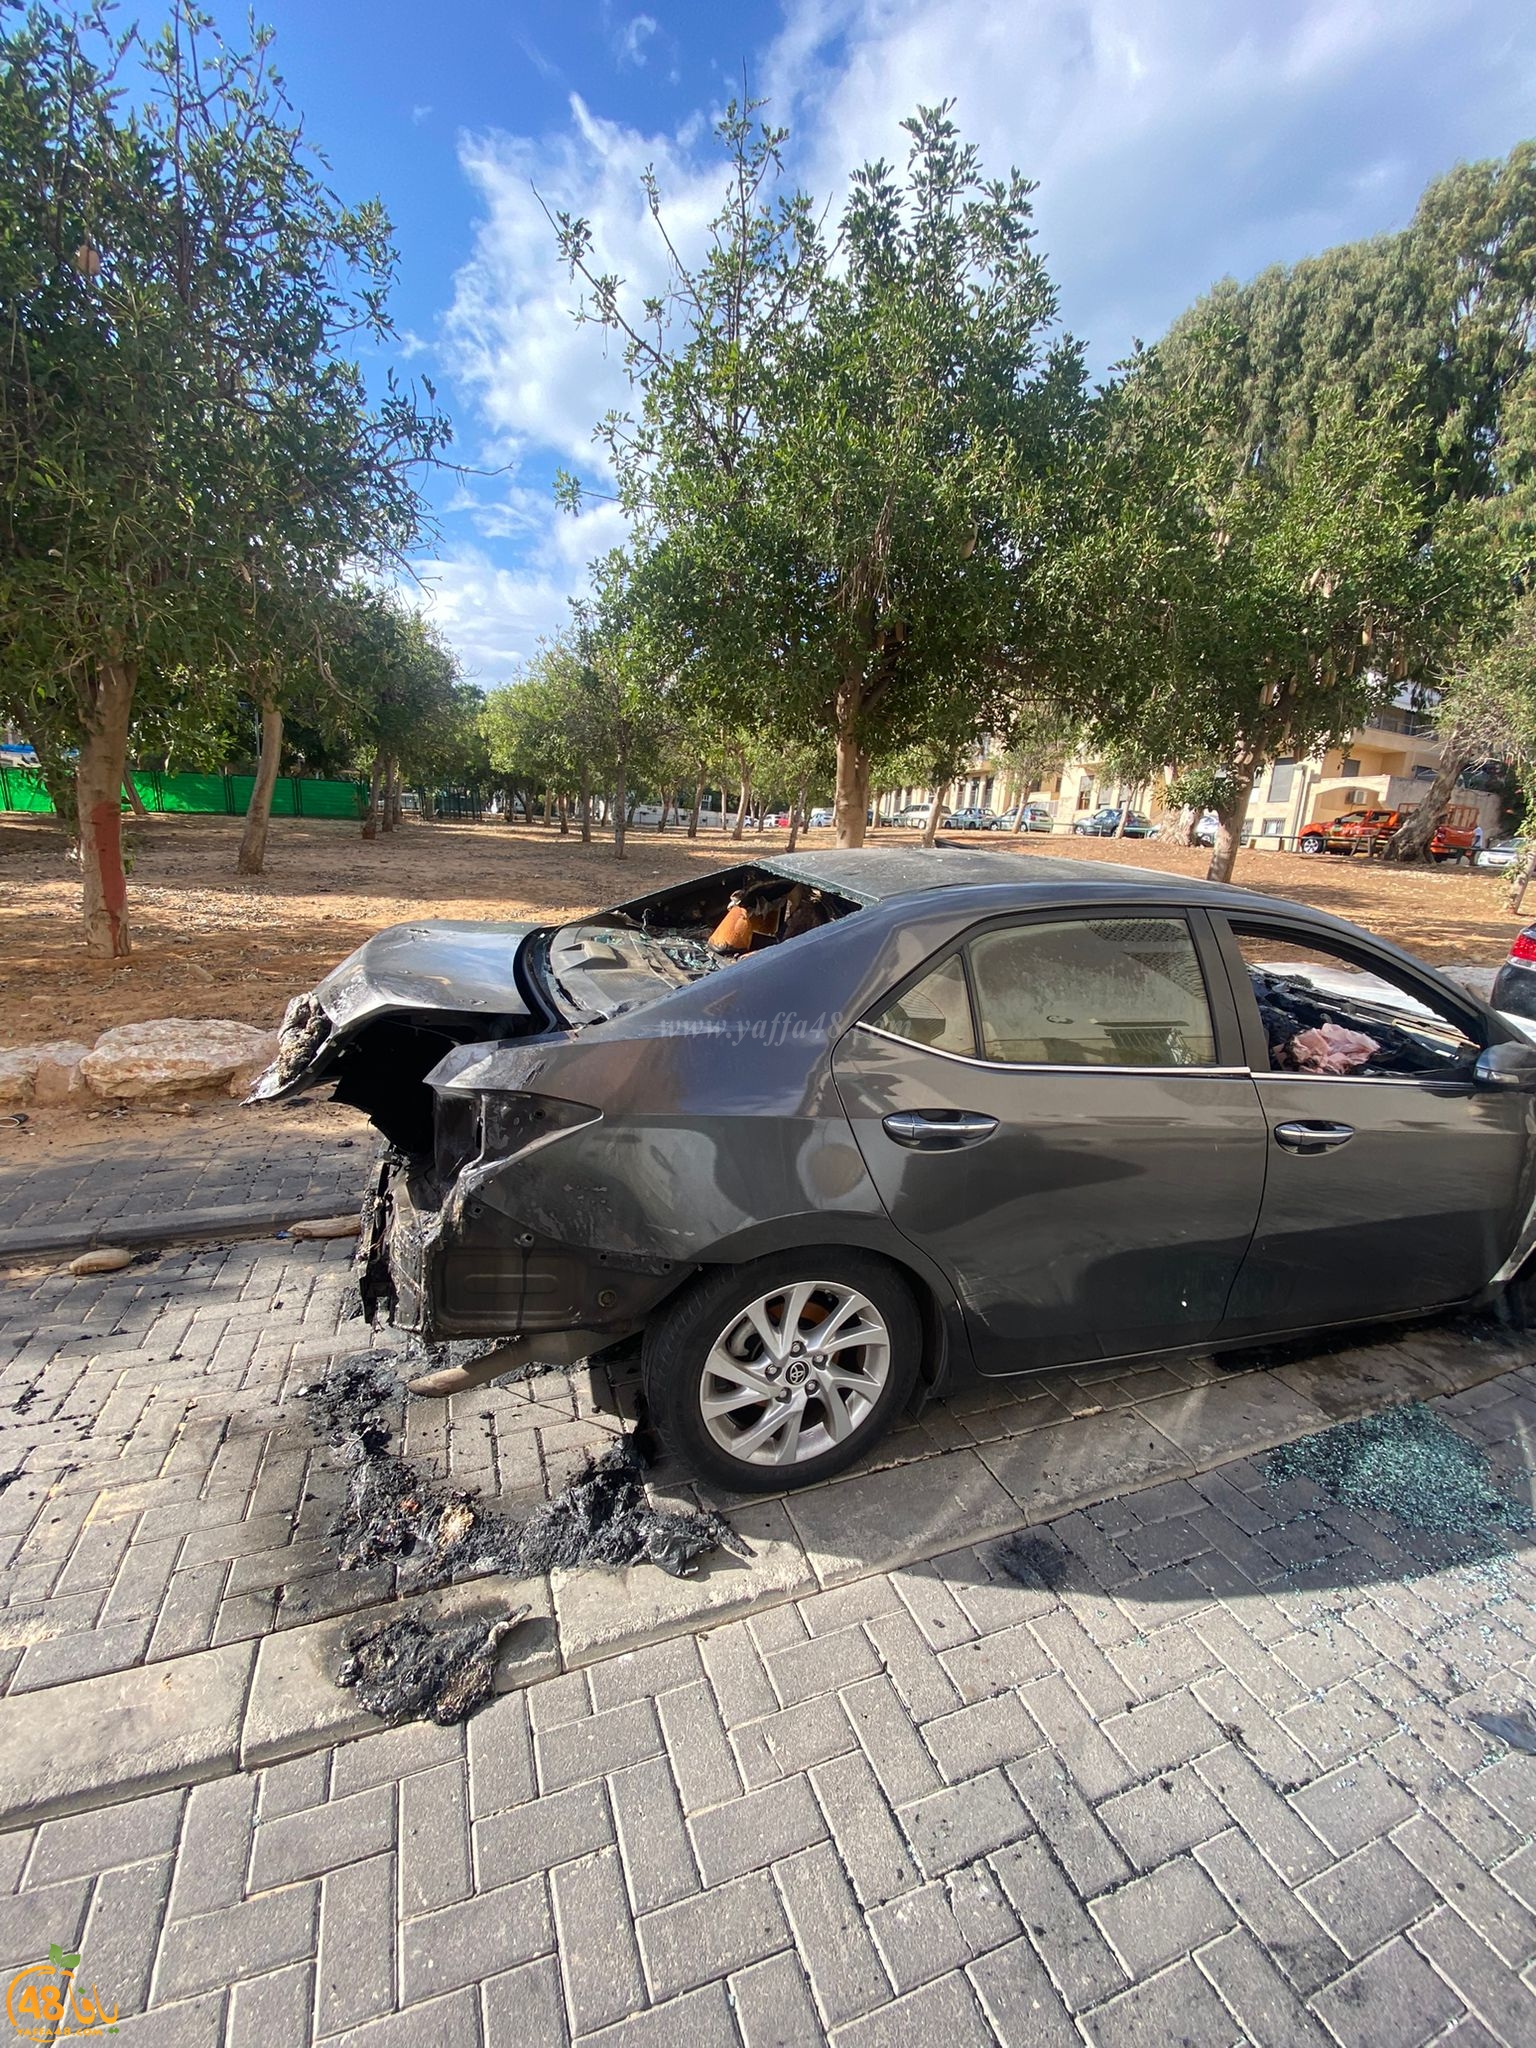  فجر اليوم - احراق سيارة في مدينة يافا 